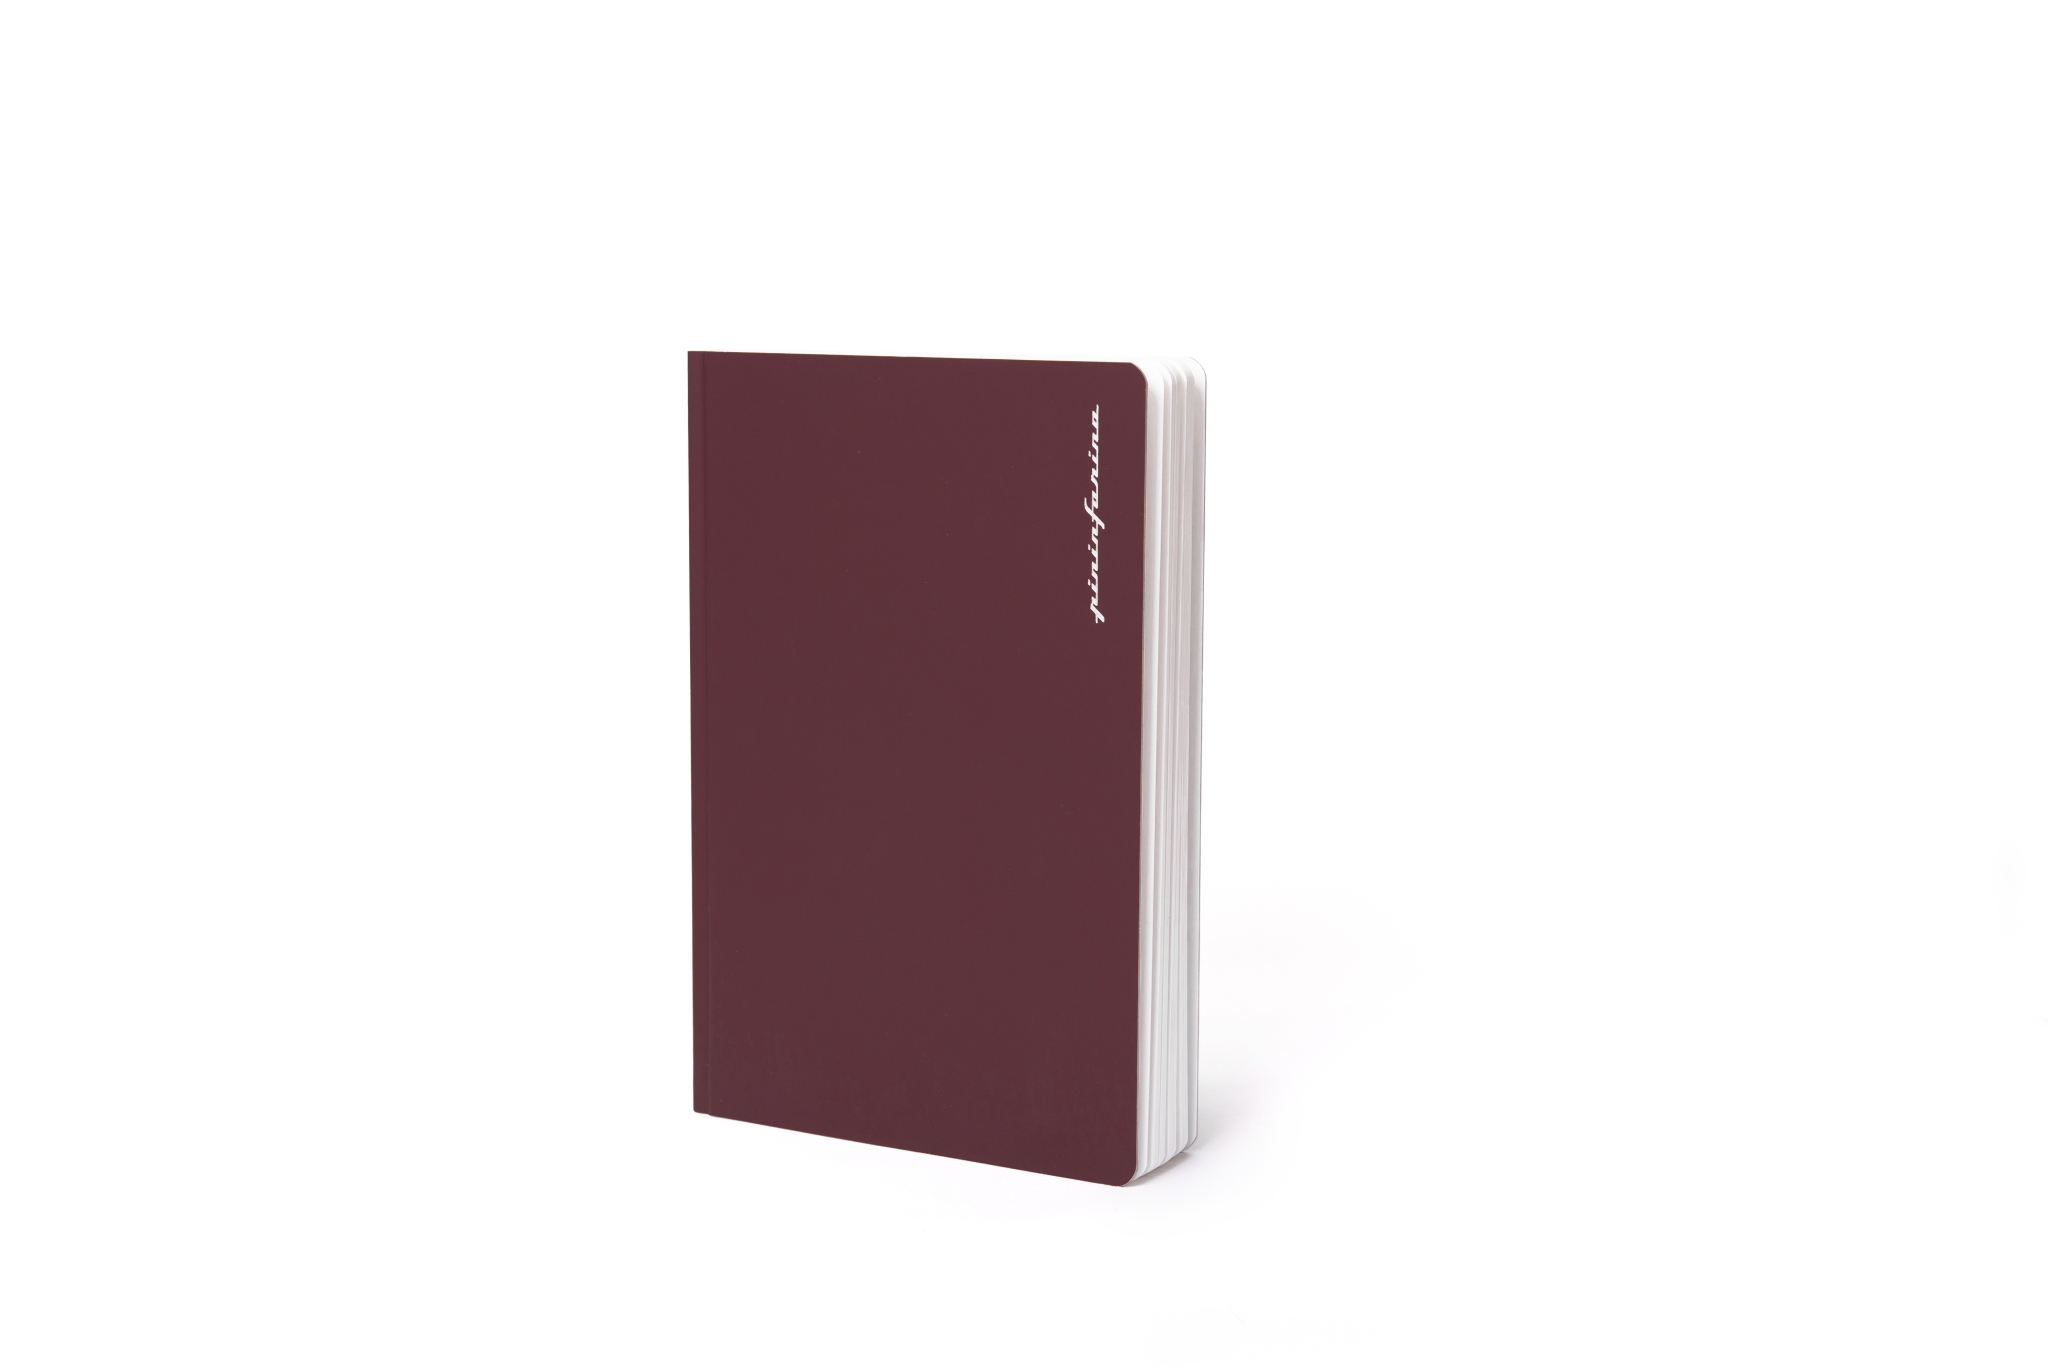 Тетрадь Pininfarina Stone Paper красная 14х21см каменная бумага, 64 листа, линованная, #ff0000, каменная бумага